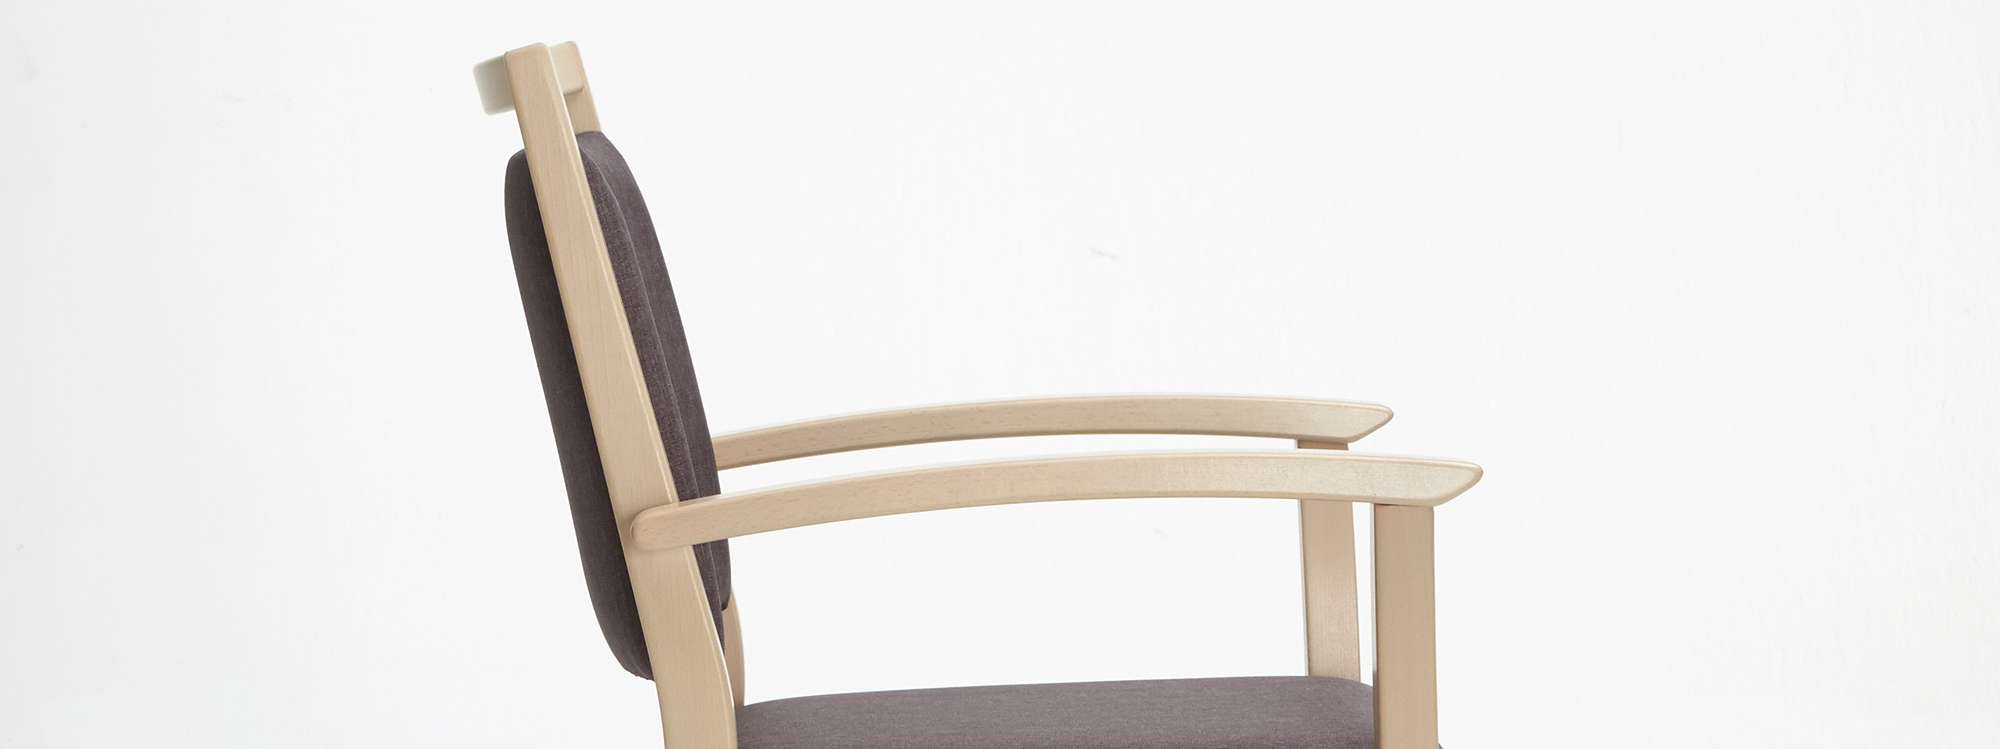 Modèle Mavo version chaise empilable avec accoudoirs